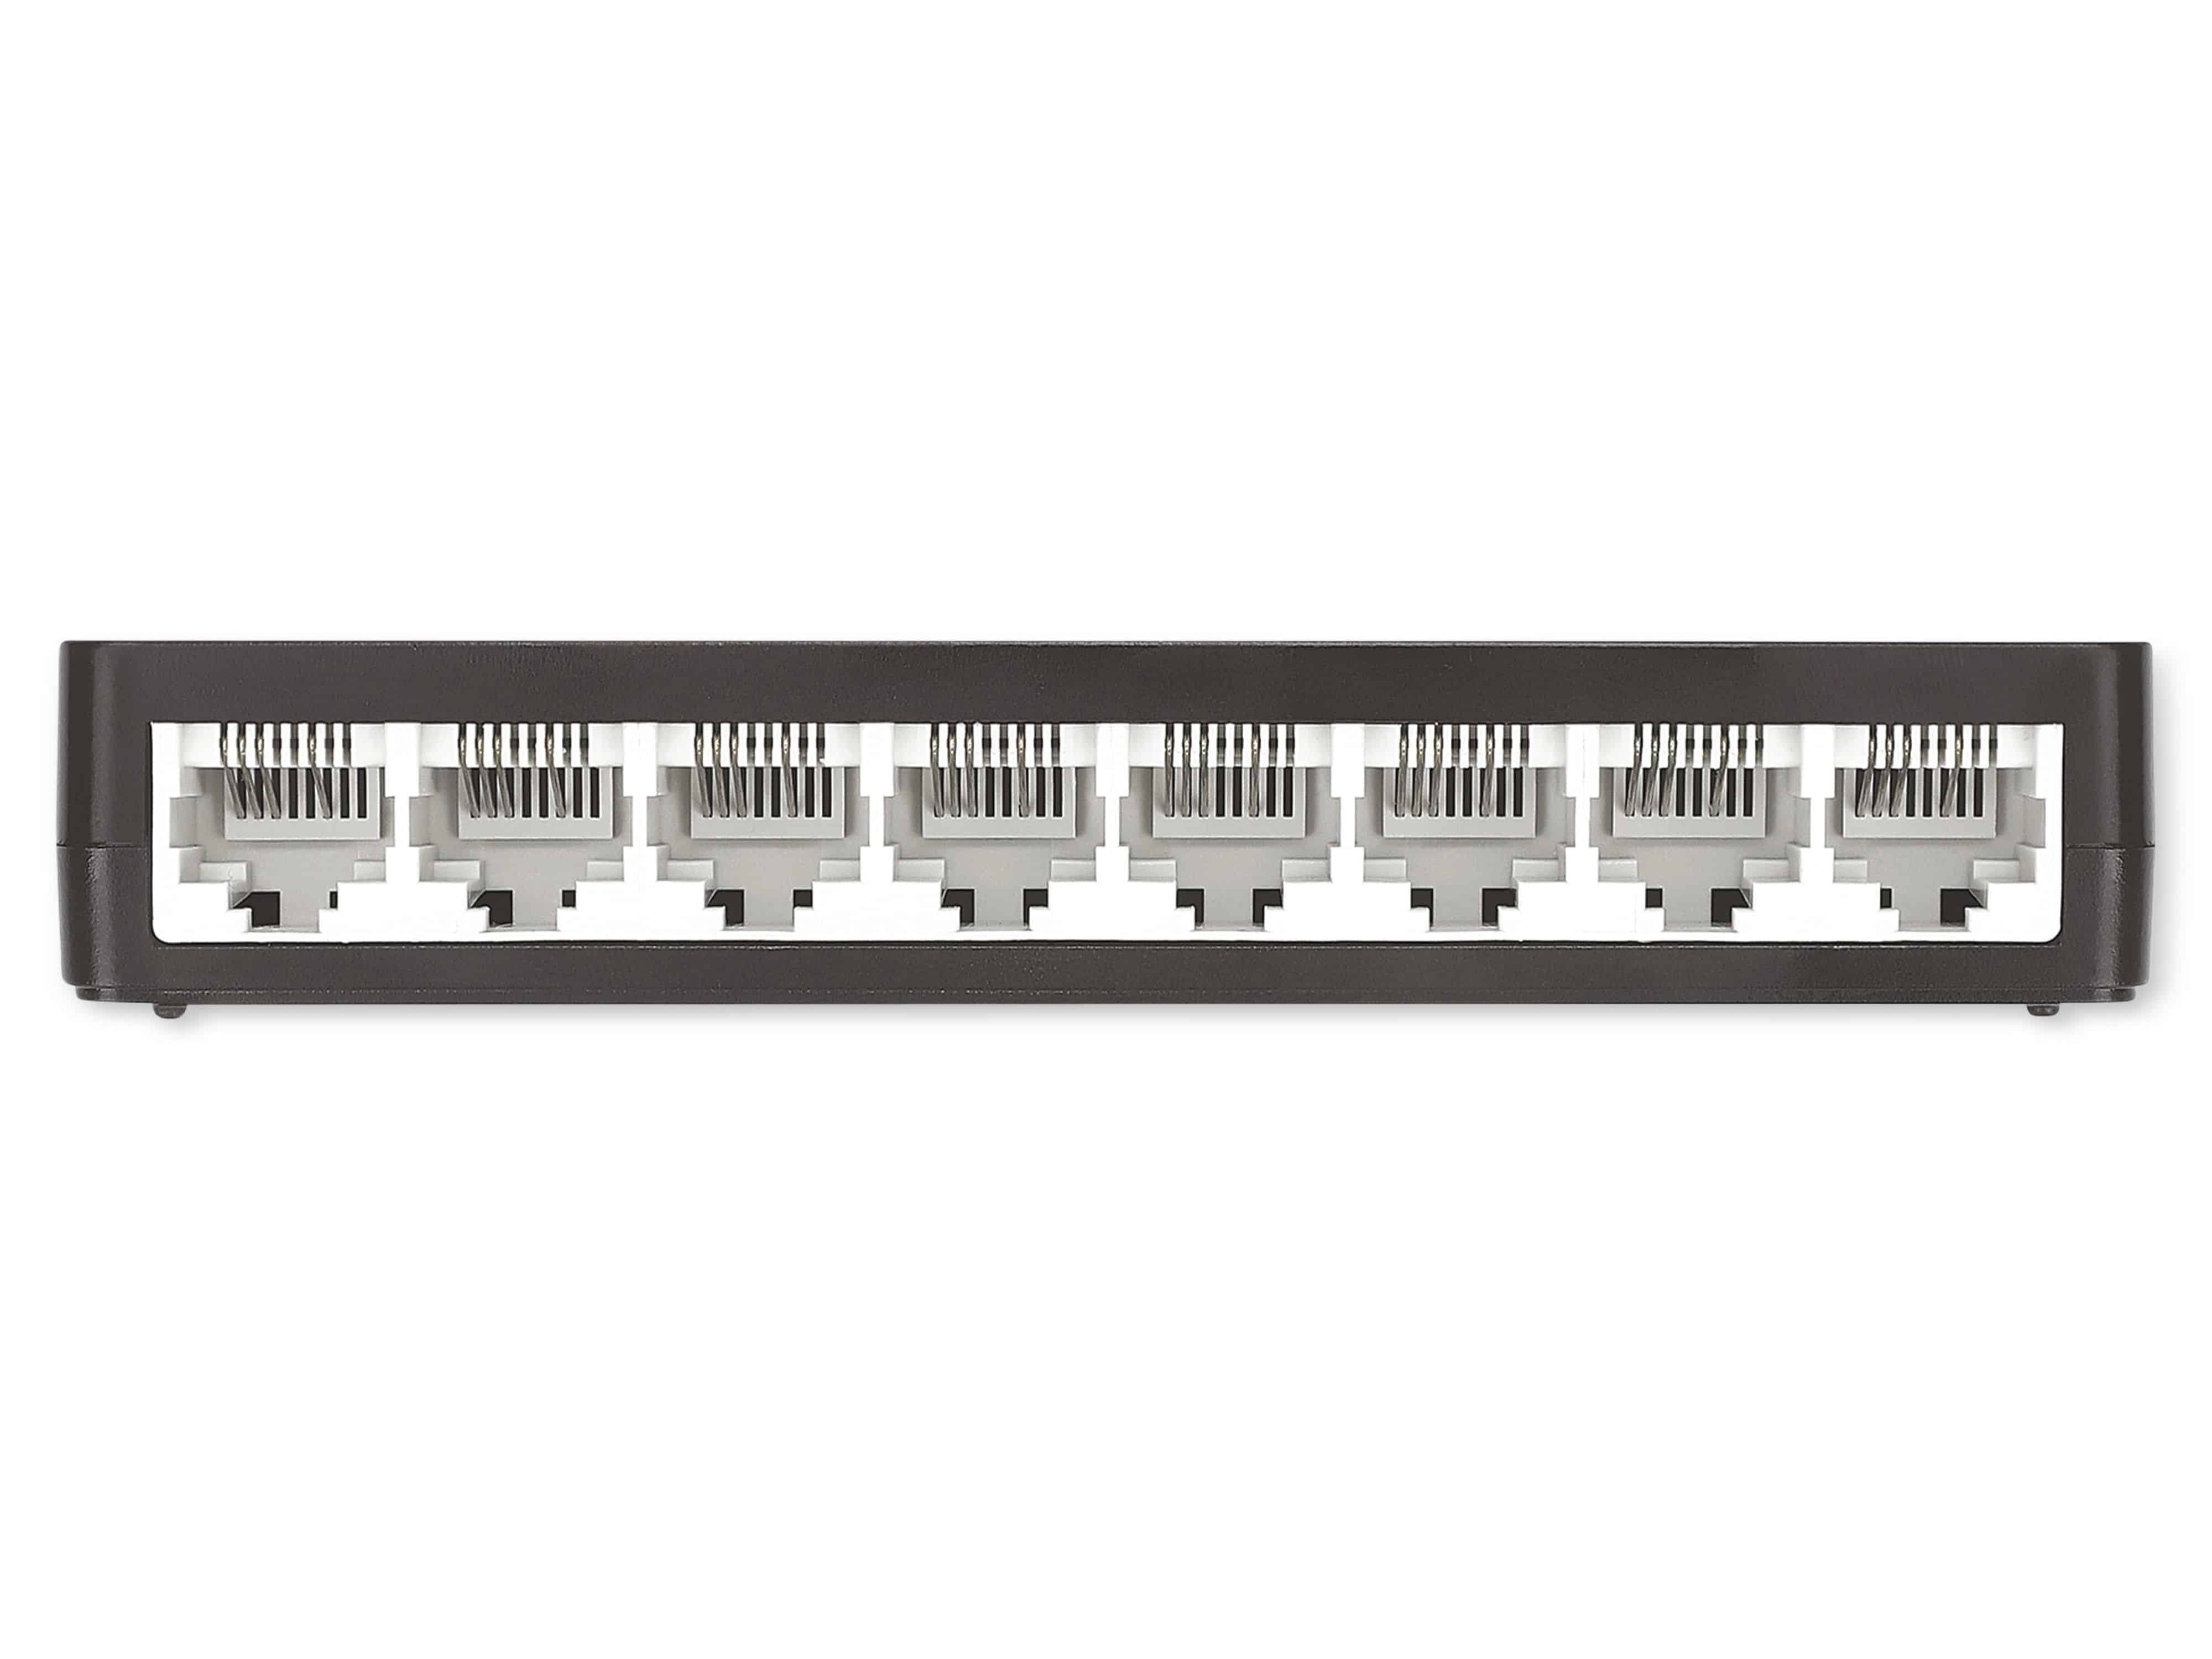 Intellinet INTELLINET Ethernet Switch 561730 8-Port, Netzwerk-Switch schwarz